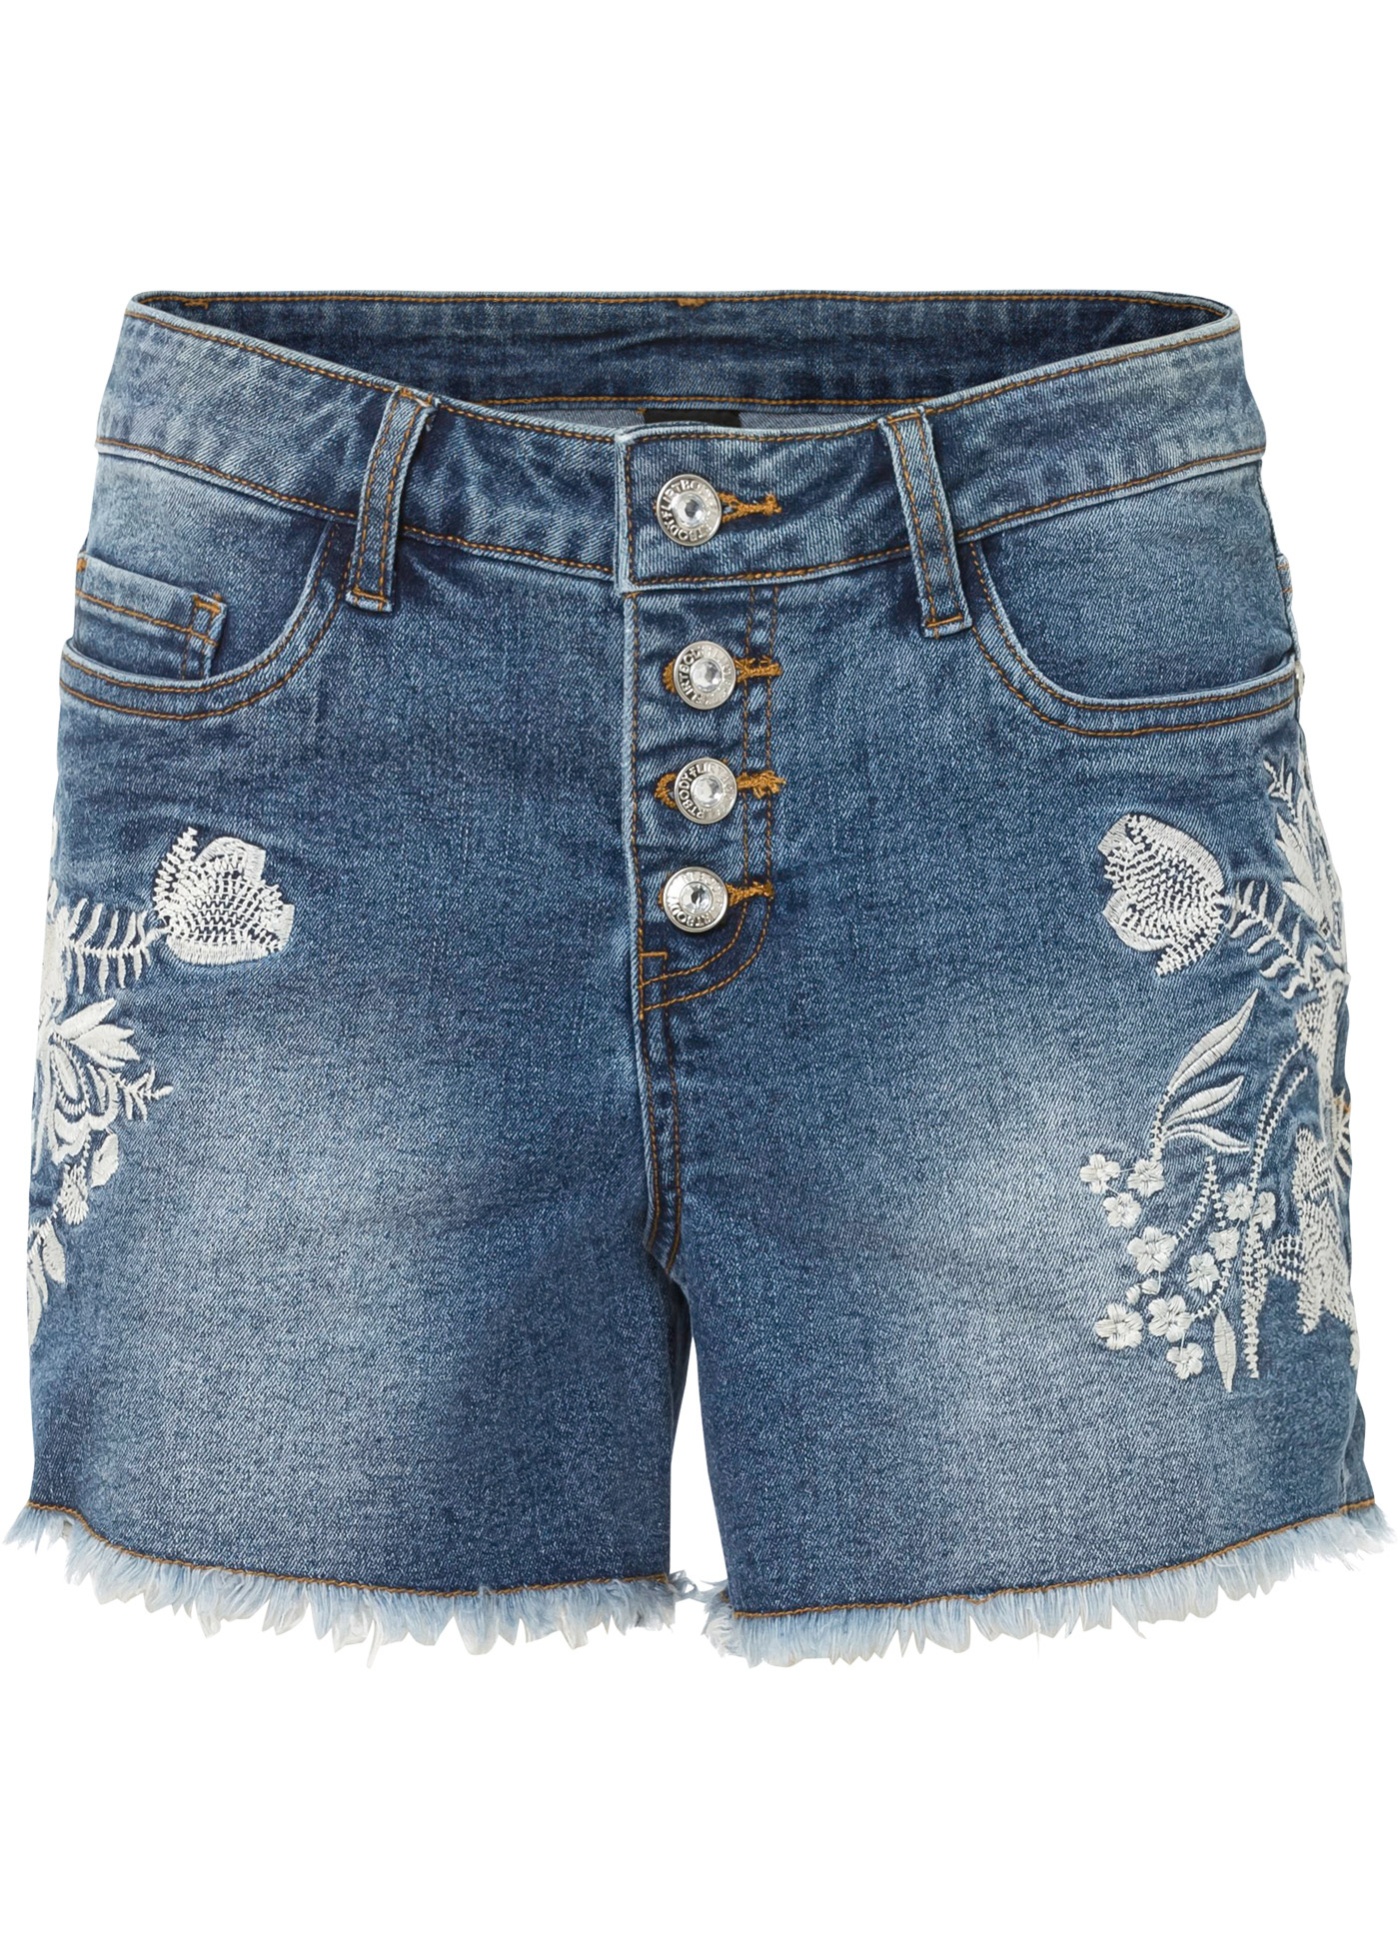 Moderne Jeans-Shorts mit seitlicher Stickerei (90739795) in blau denim